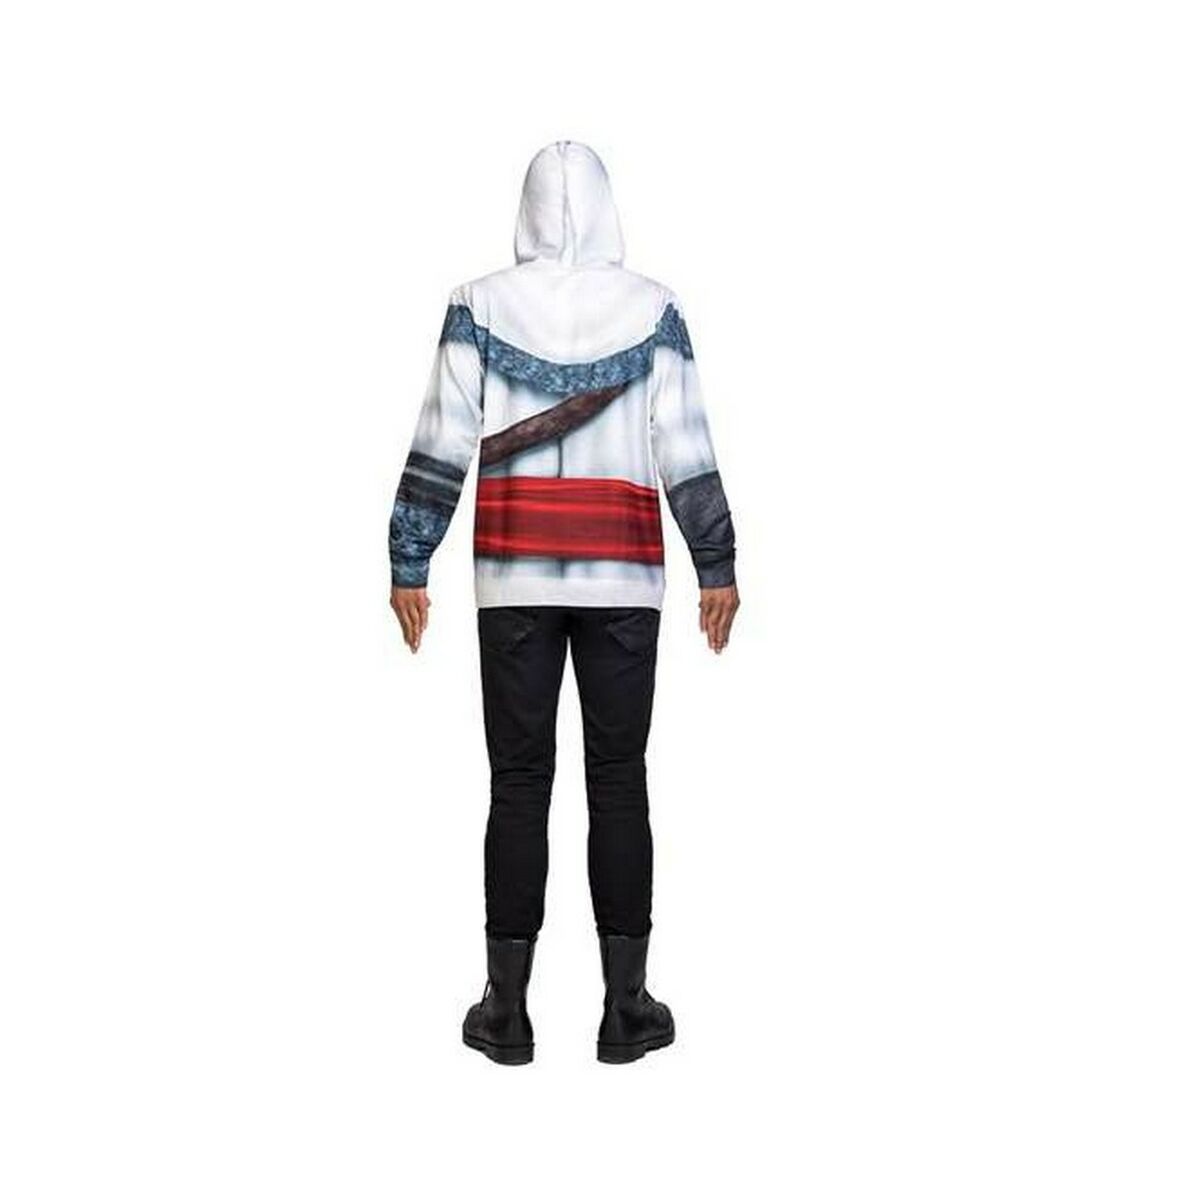 Costume per Adulti My Other Me Nicola Orelov Assassin's Creed Taglia:XL - Disponibile in 3-4 giorni lavorativi